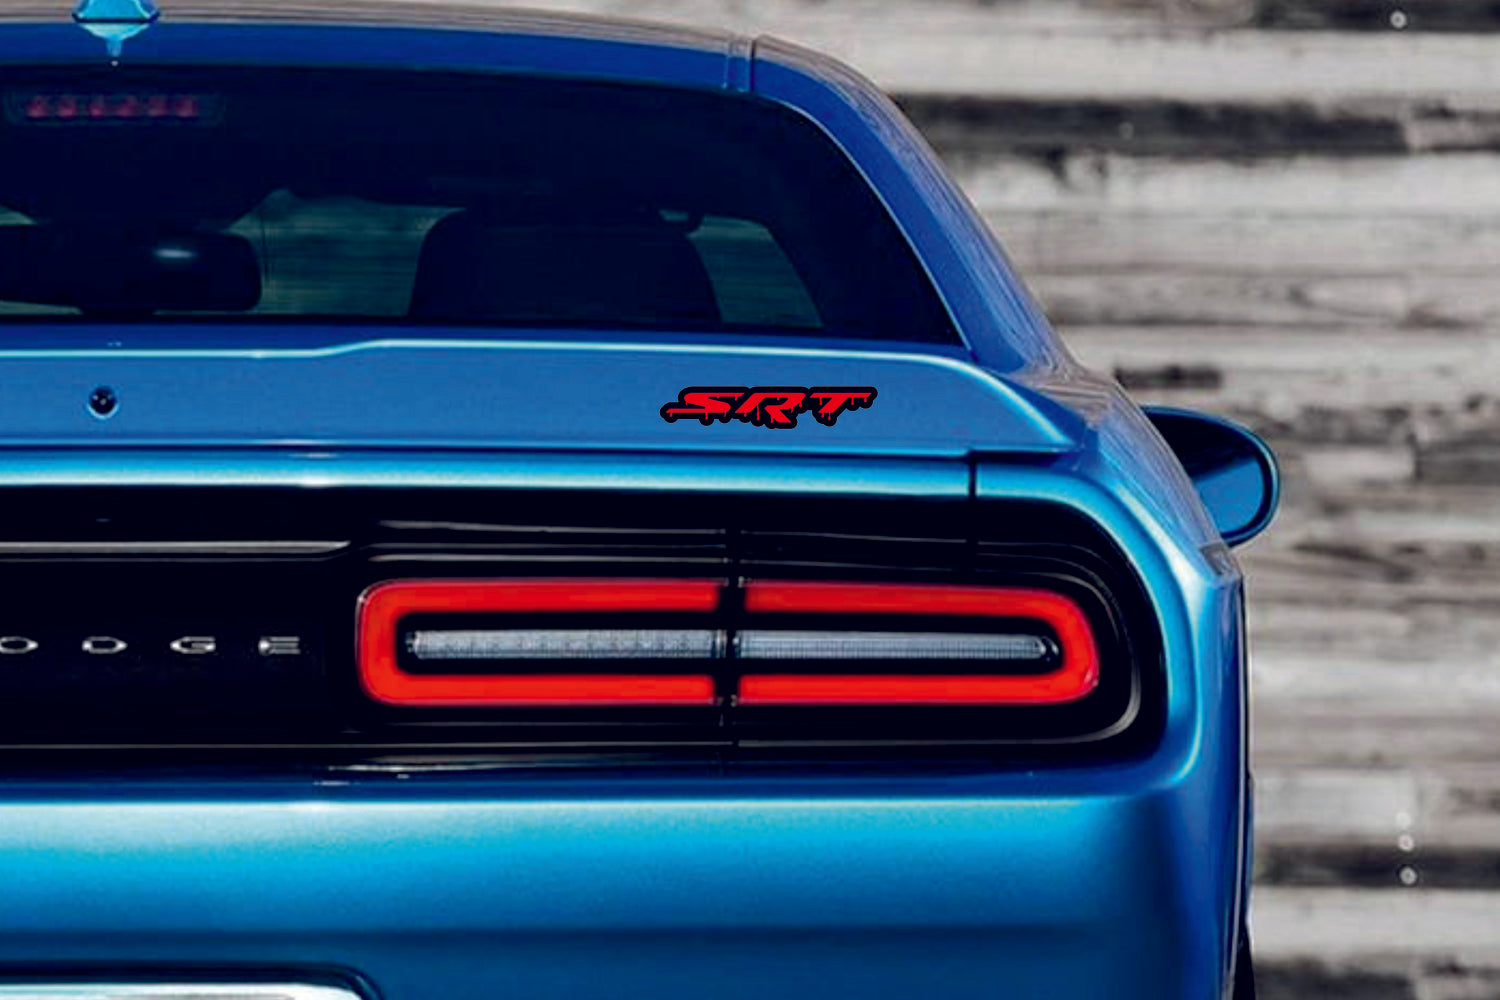 Dodge tailgate trunk rear emblem with SRT Blood logo